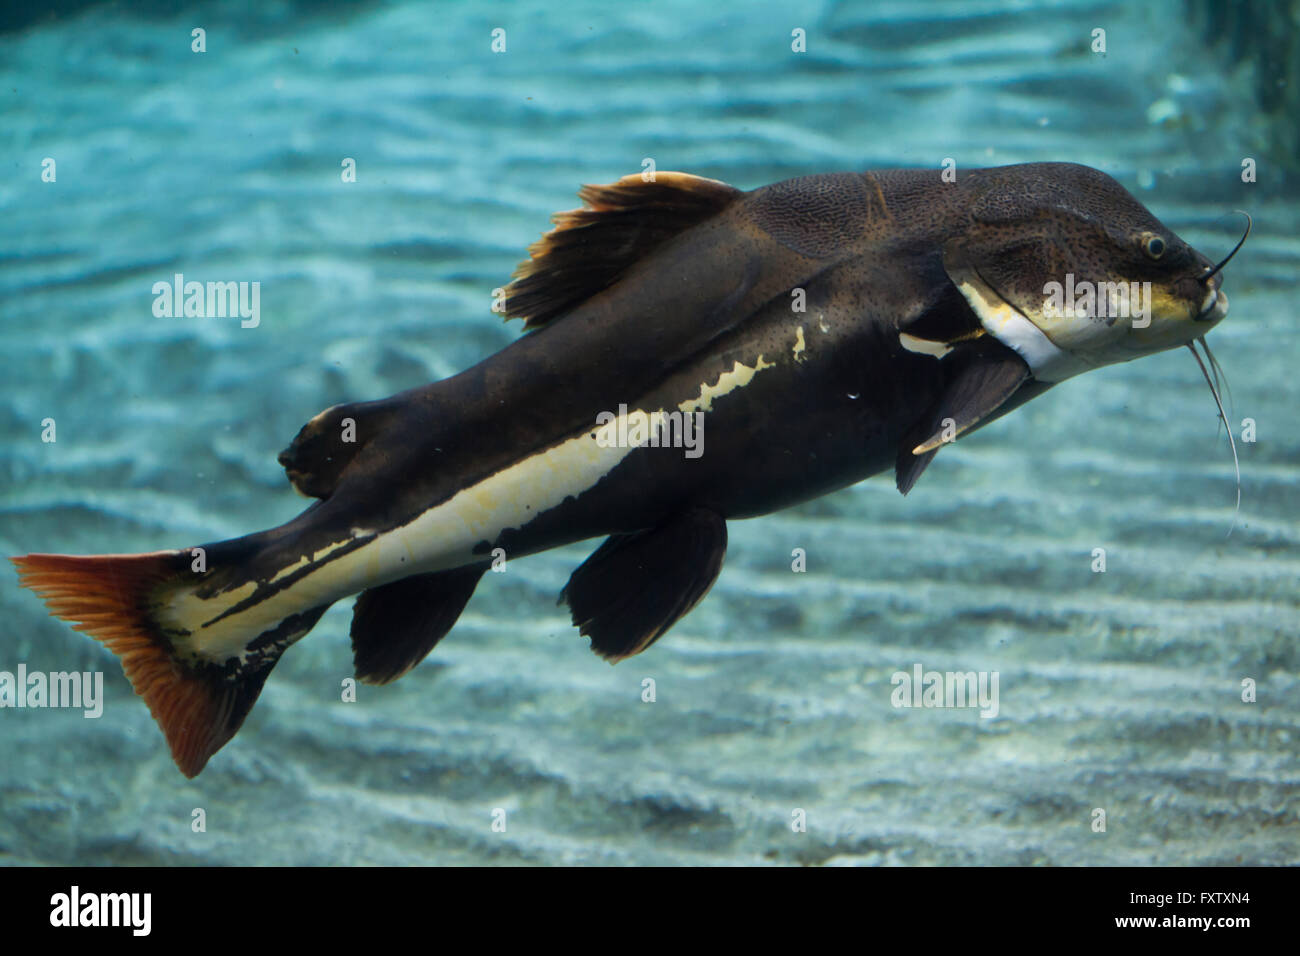 Redtail catfish (Phractocephalus hemioliopterus) in the Genoa Aquarium in Genoa, Liguria, Italy. Stock Photo